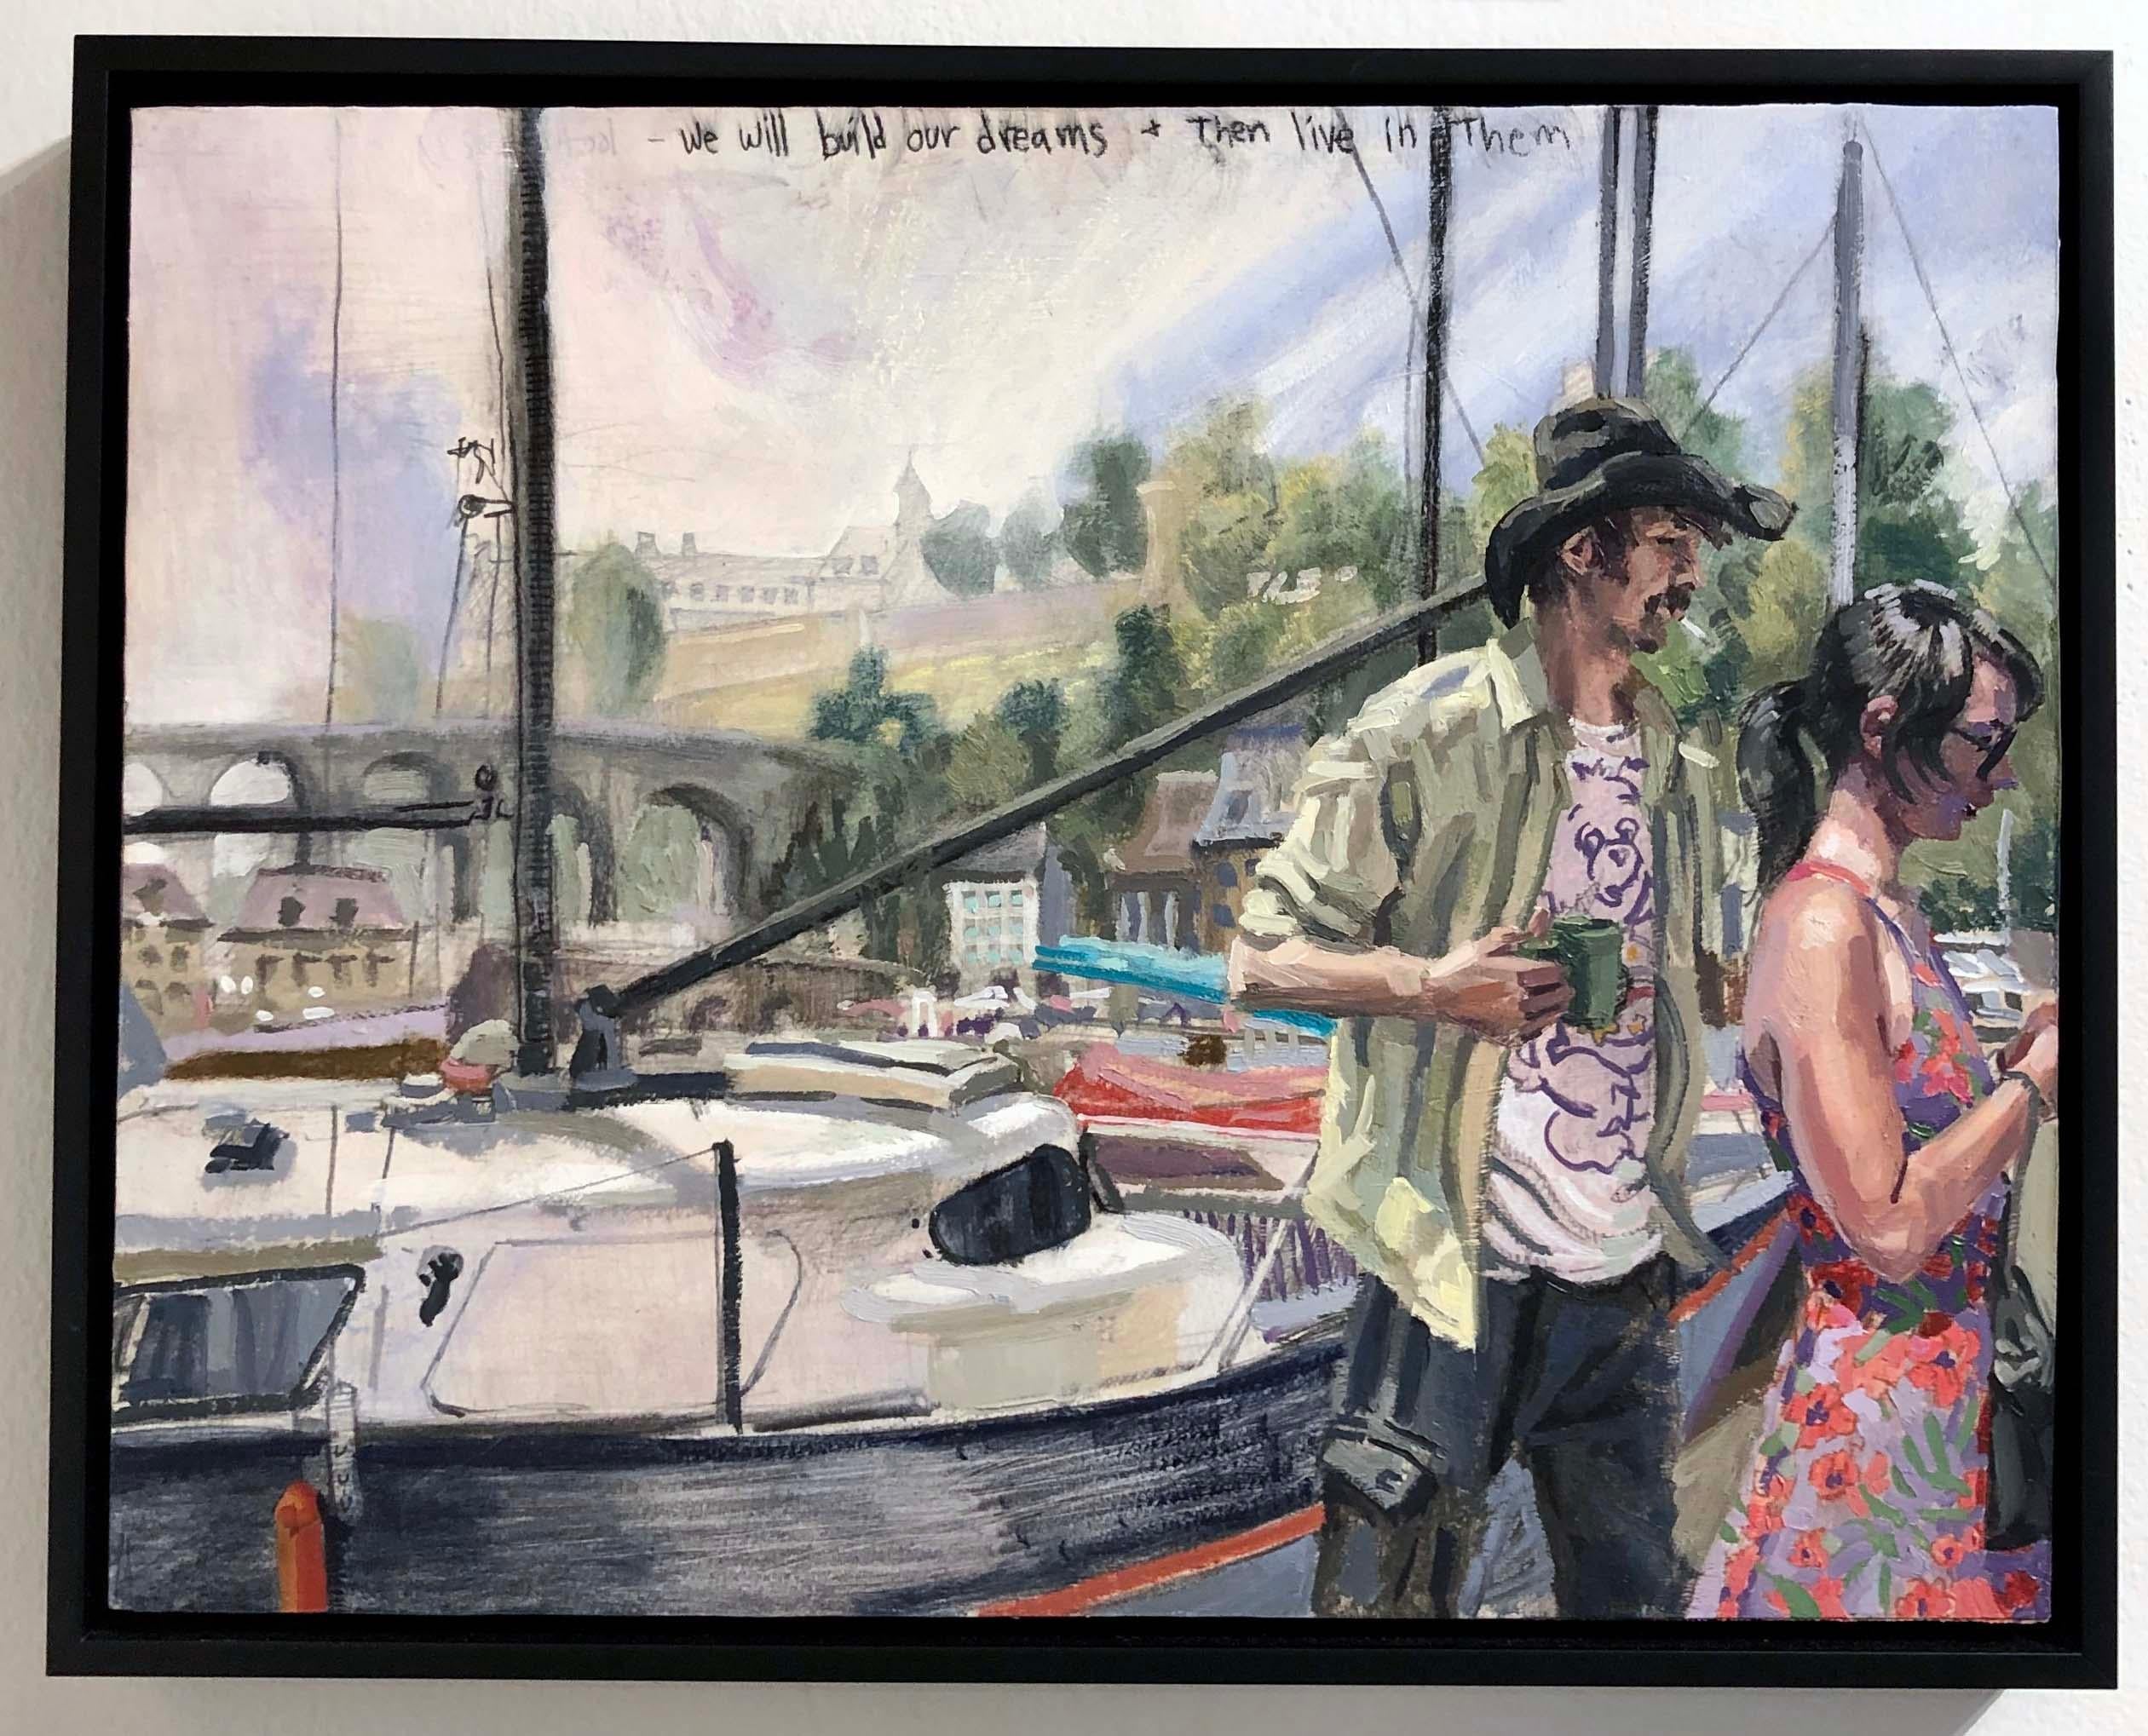 We Will Build Our Dreams and Then Live in Them #2, Zwei Figuren und ein Segelboot – Painting von Benjamin Duke